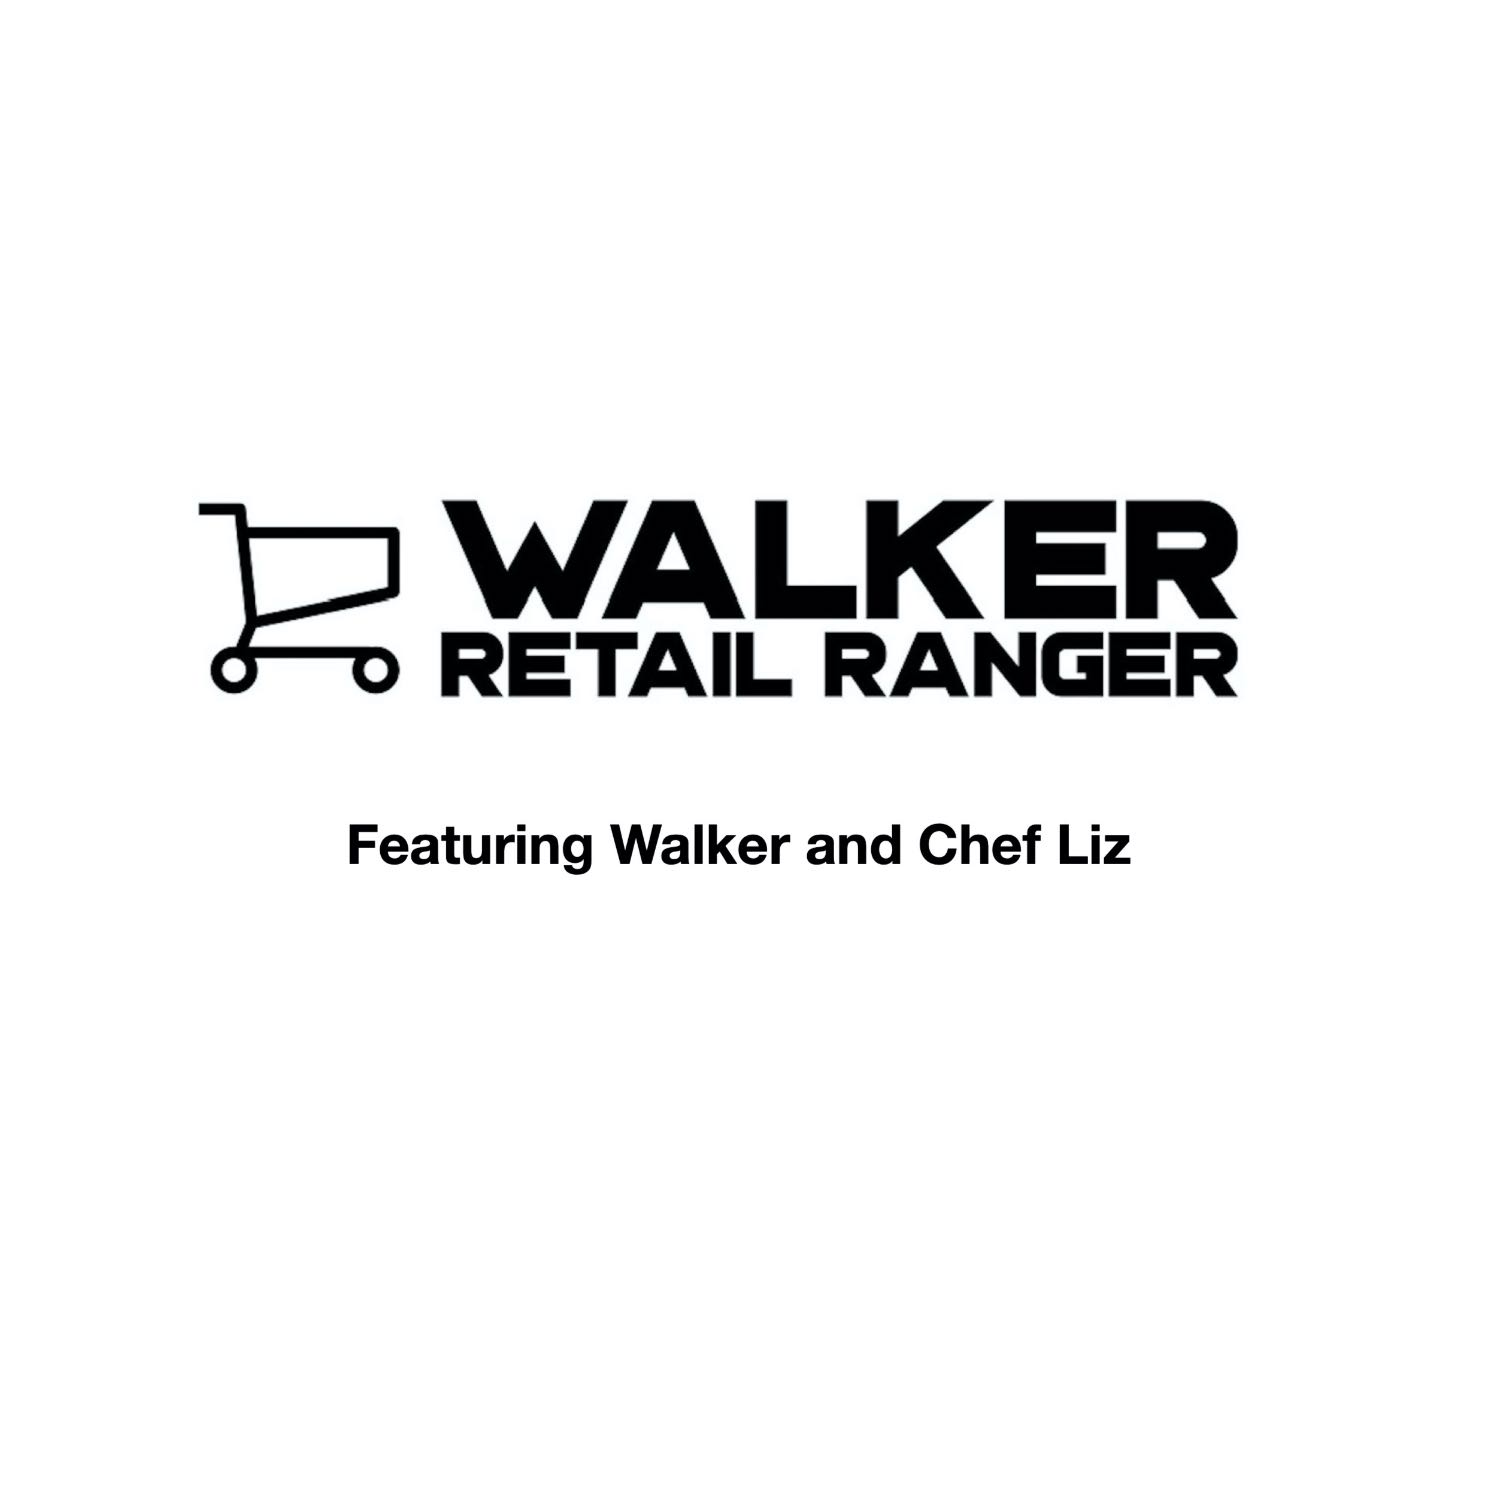 Retail Ranger Episode 76